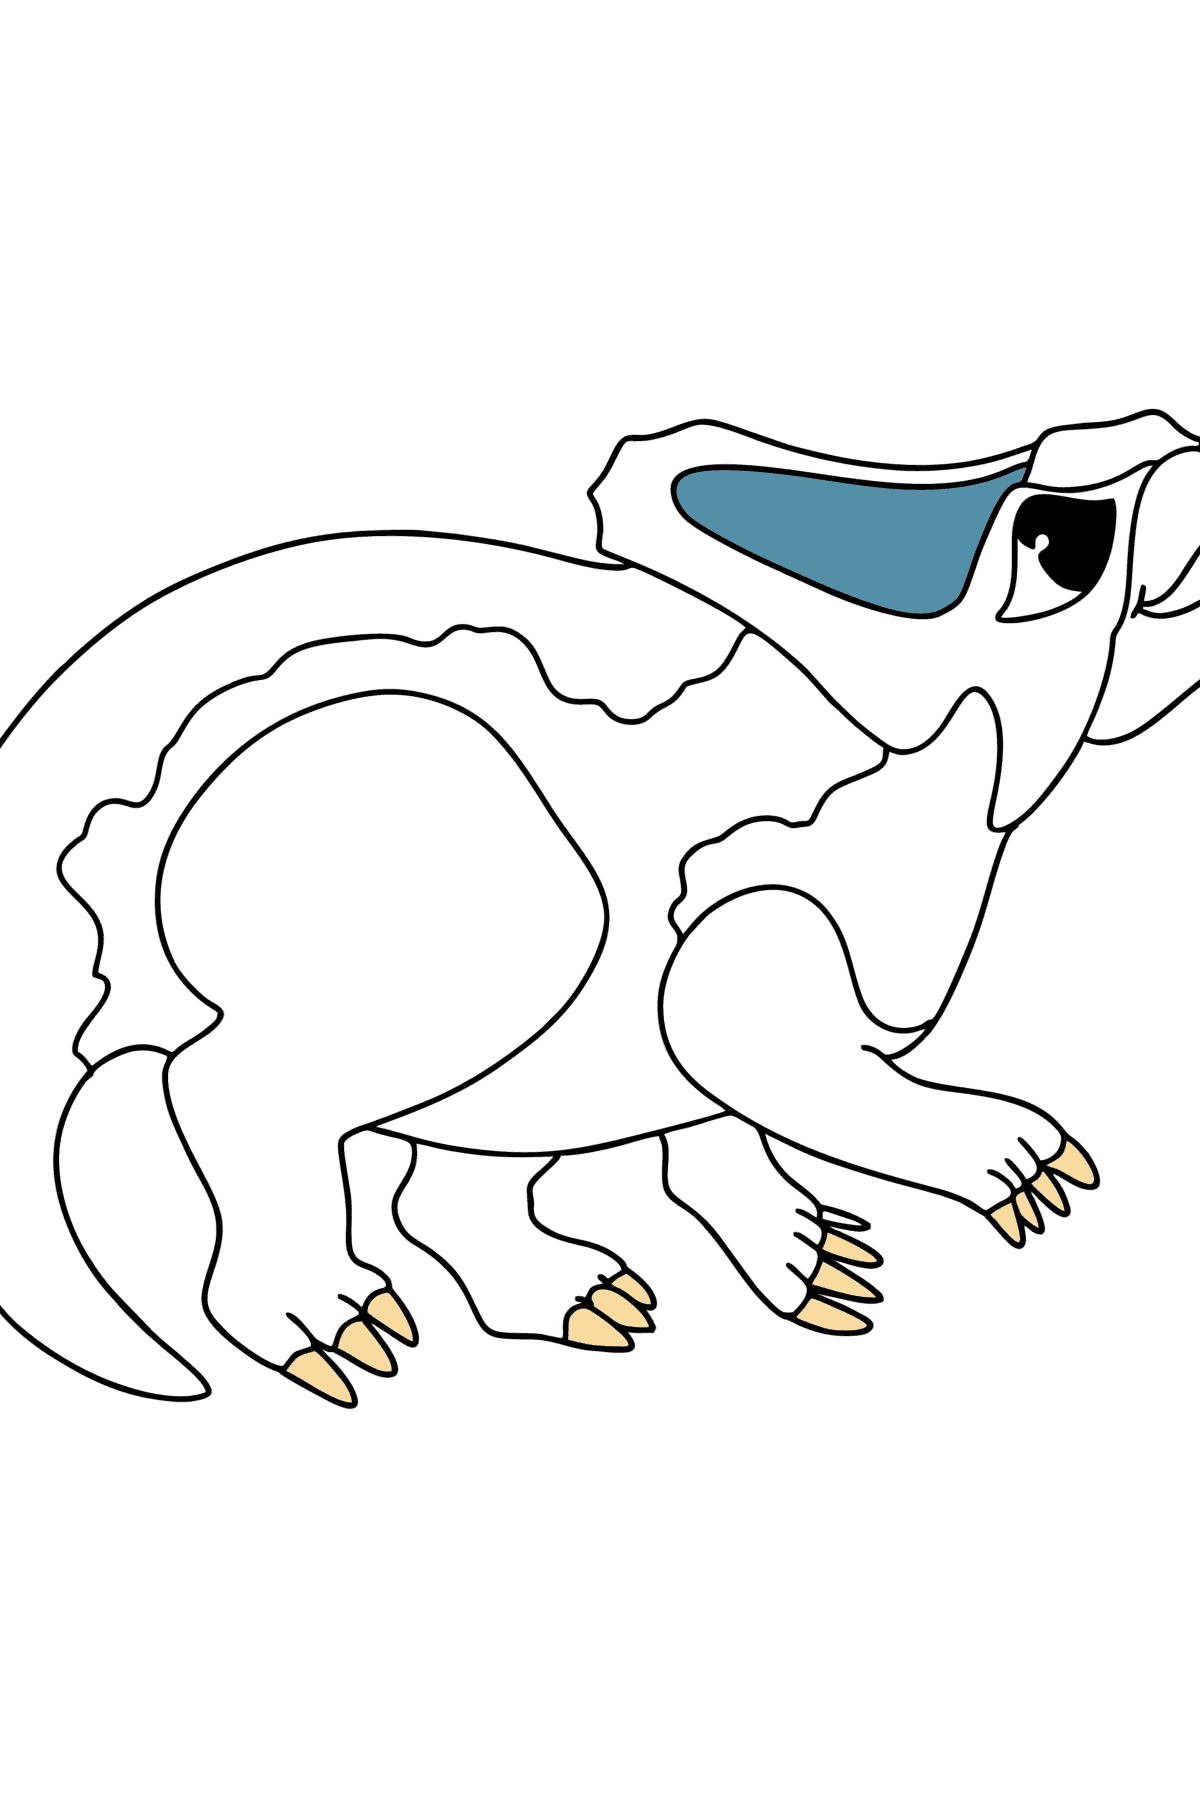 Ausmalbild Protoceratops - Malvorlagen für Kinder